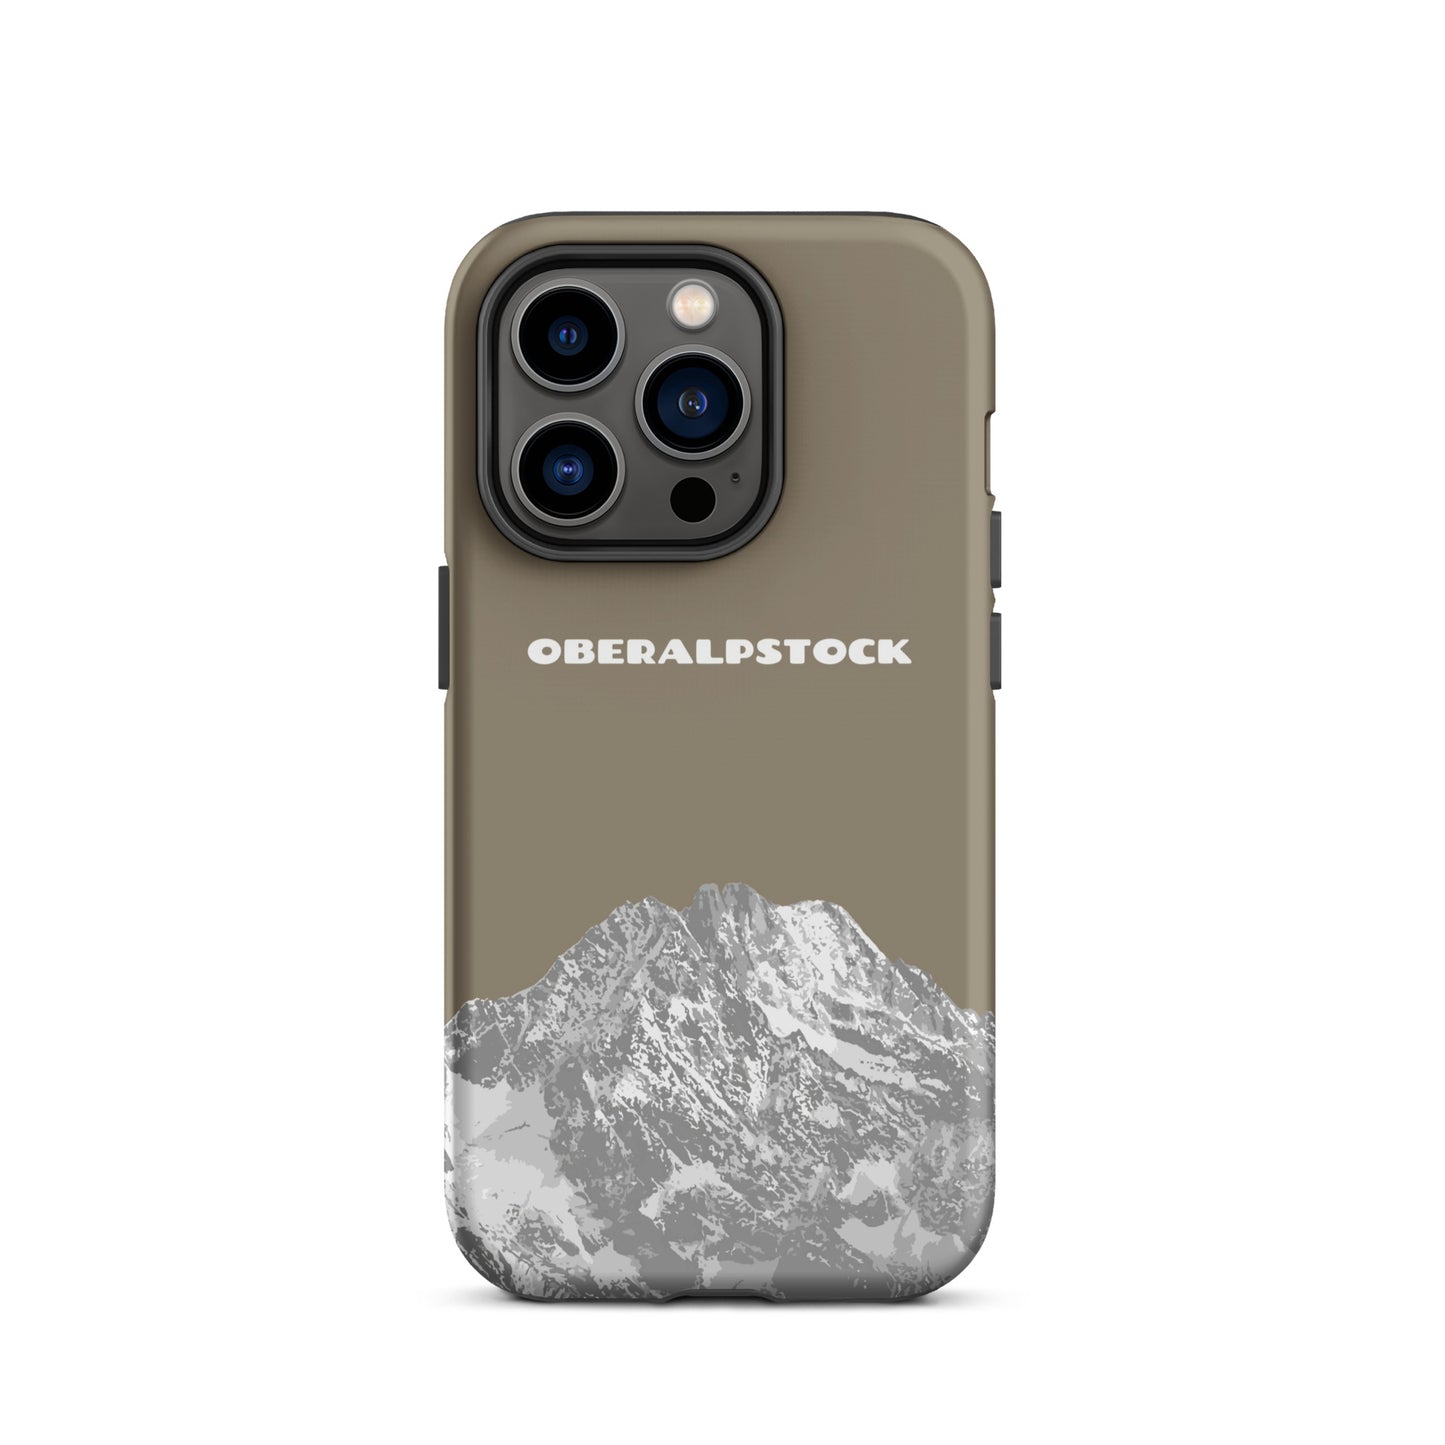 iPhone Case - Oberalpstock - Graubraun